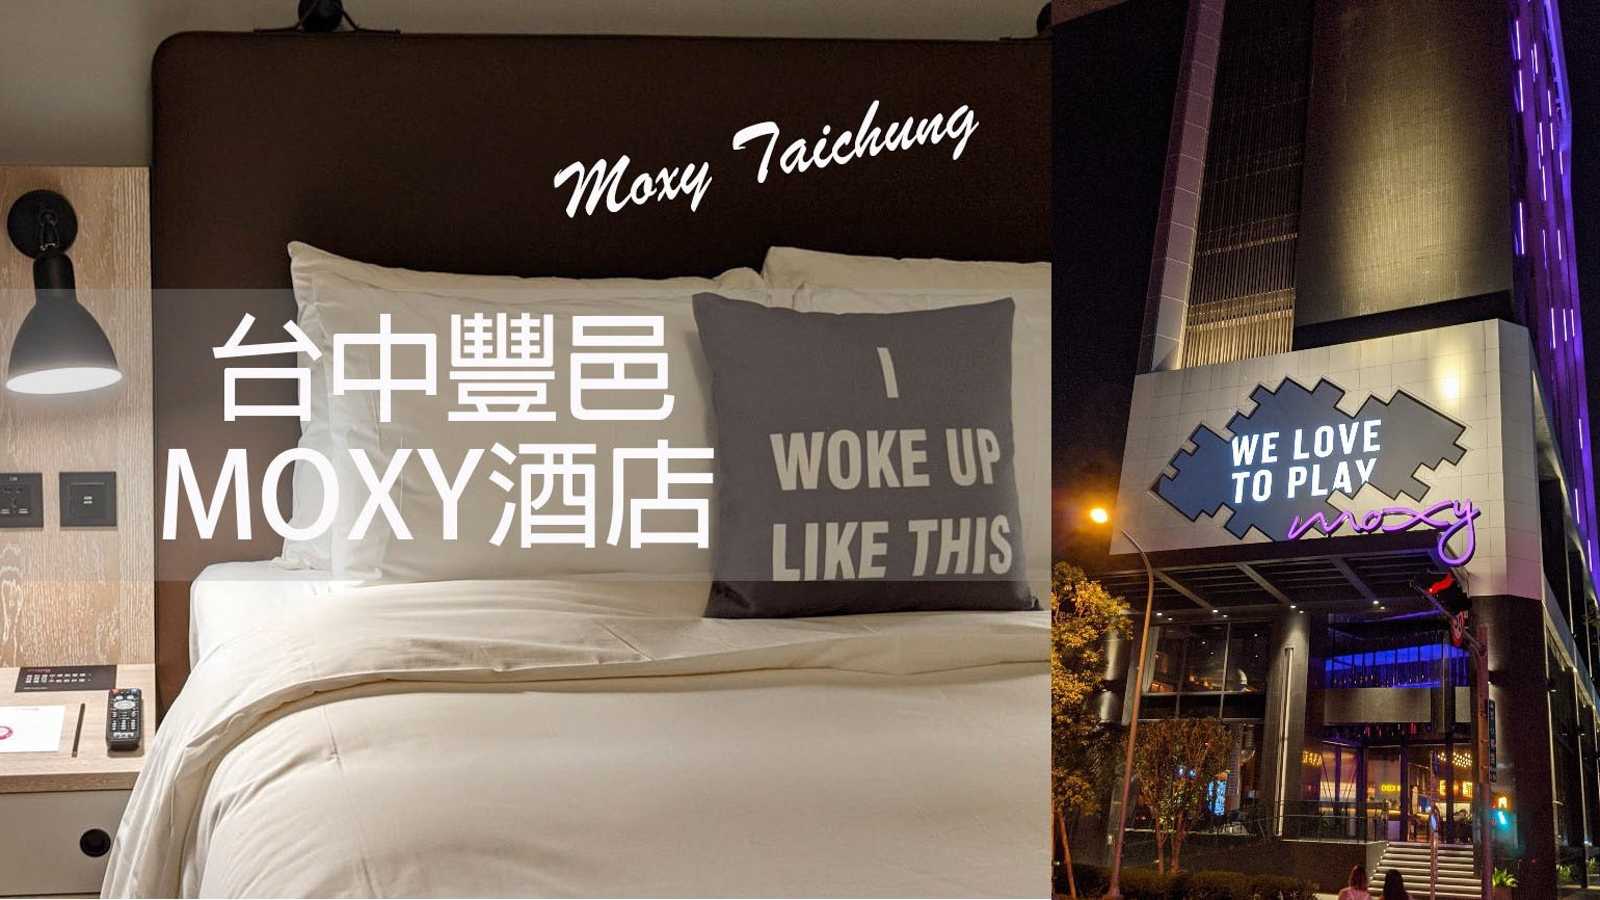 ã€�å�°ä¸­ï¼Žè±�é‚‘ Moxy é…’åº—ã€‘å�²ä¸Šæœ€èª å¯¦ä½�å®¿å¿ƒå¾—åˆ†äº«ï½œæ½®åˆ°å‡ºæ°´çš„ç¶²ç¾Žå¿…åŽ»å¤œåº—é¢¨é£¯åº— Moxy Taichung